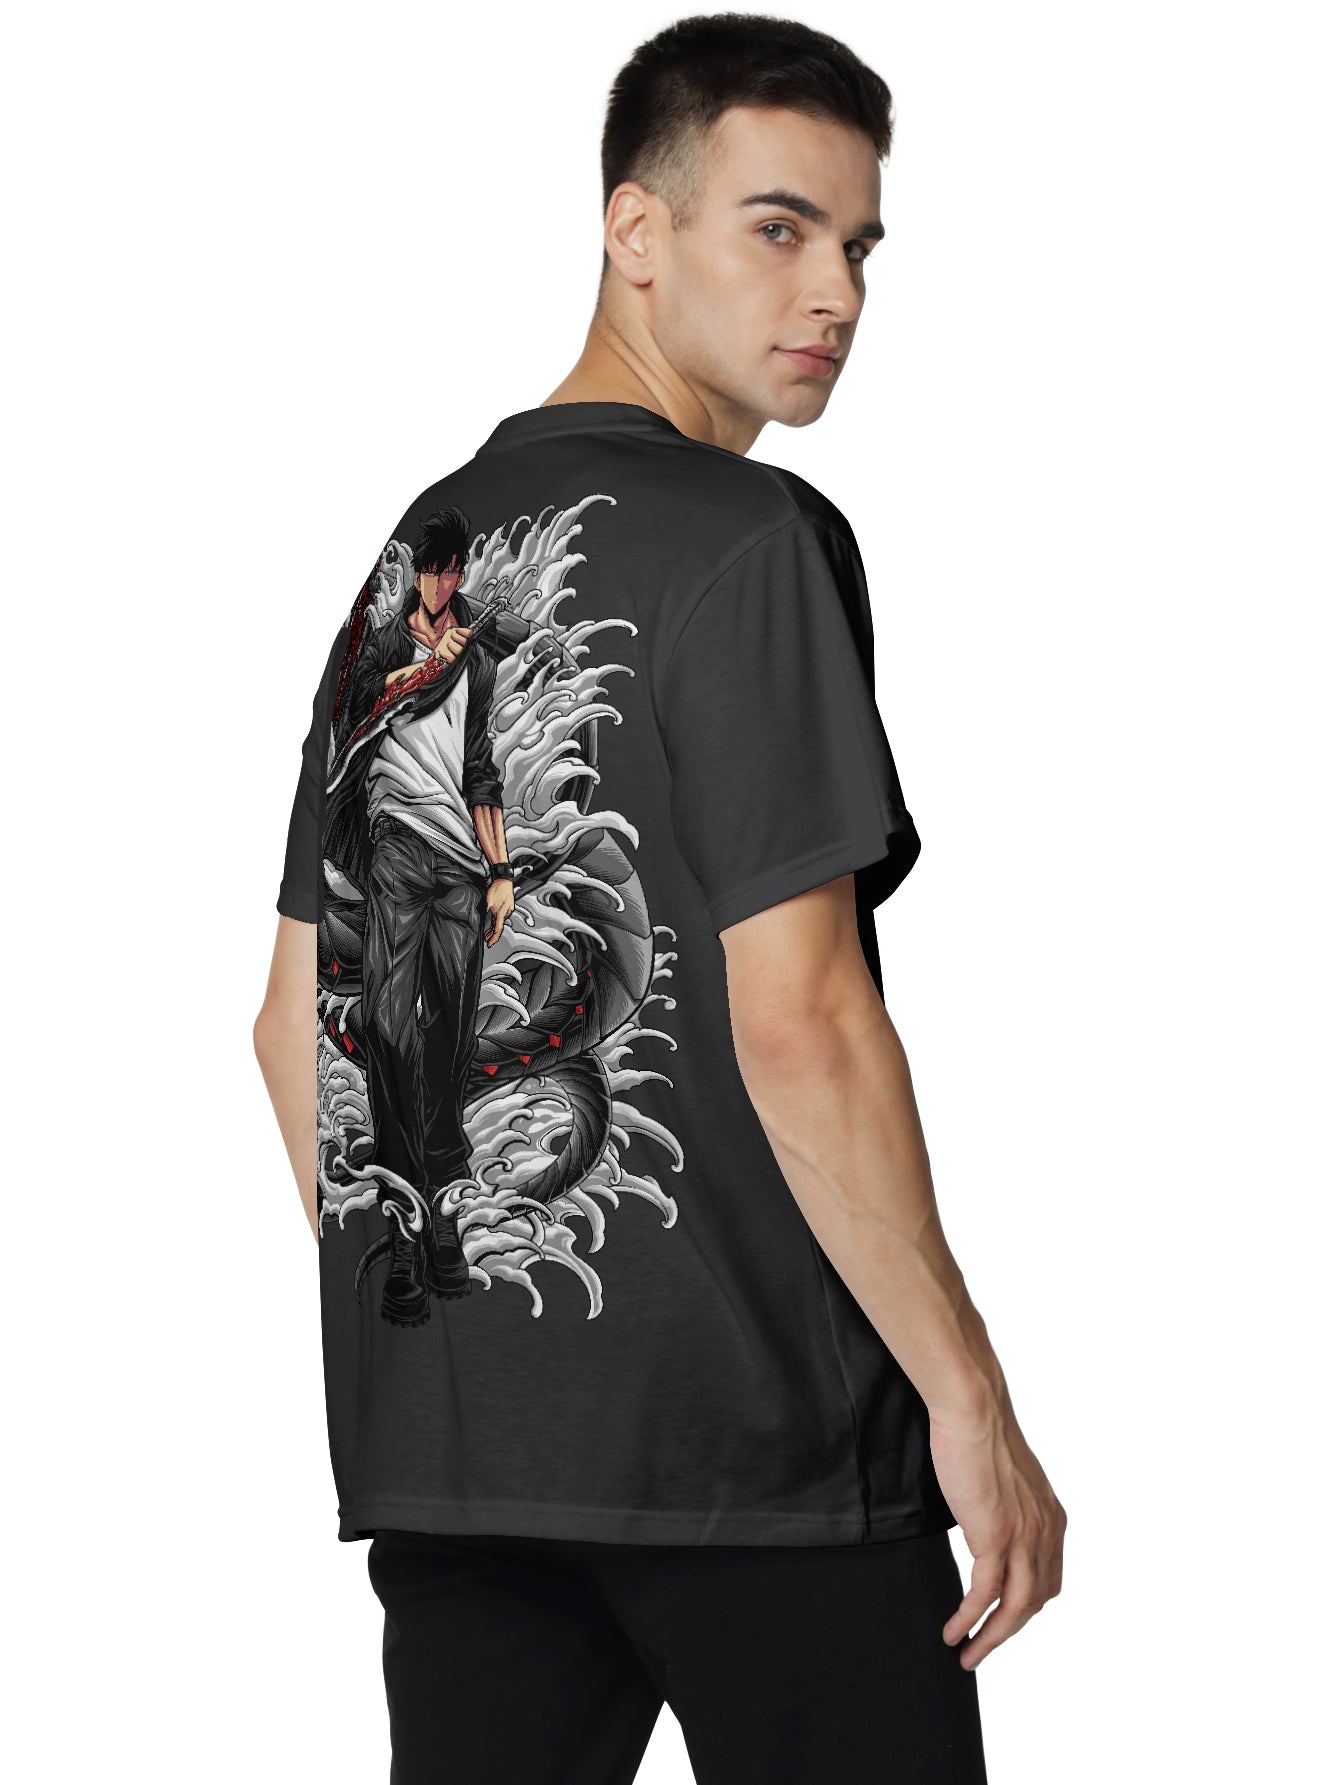 SL Venom Fang V2 Unisex T-Shirt